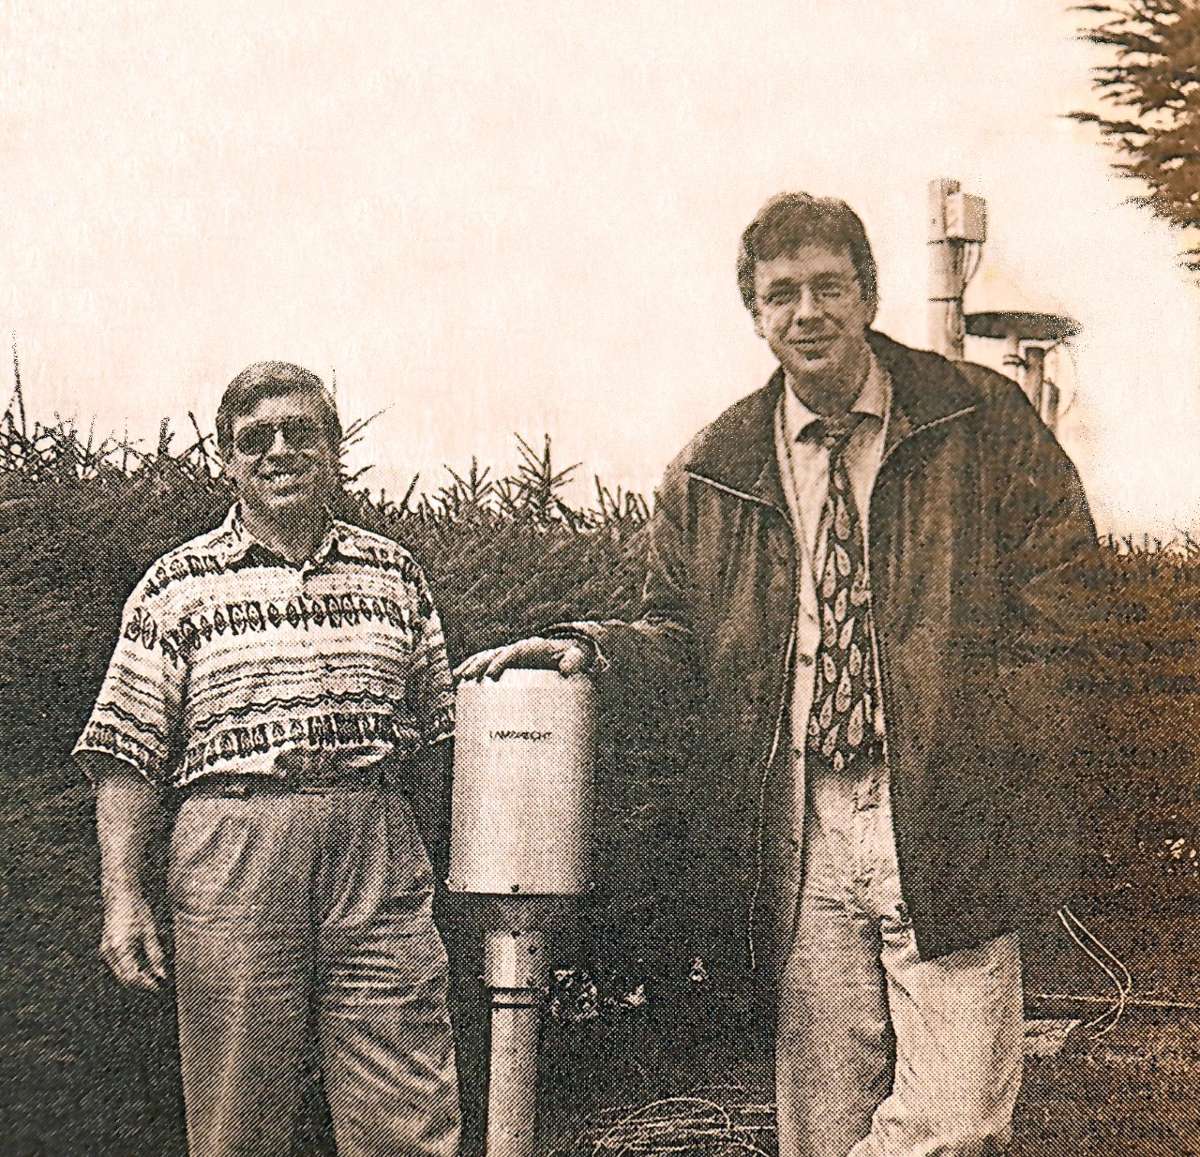 Bei der Einweihung der Wetterstation im September 1997 dankte Jörg Kachelmann (rechts) Lothar Lenz, der künftig mit den gesammelten Daten zu einer besseren lokalen Wettervorhersage beitragen würde.Archivfoto: Gerd Sutter